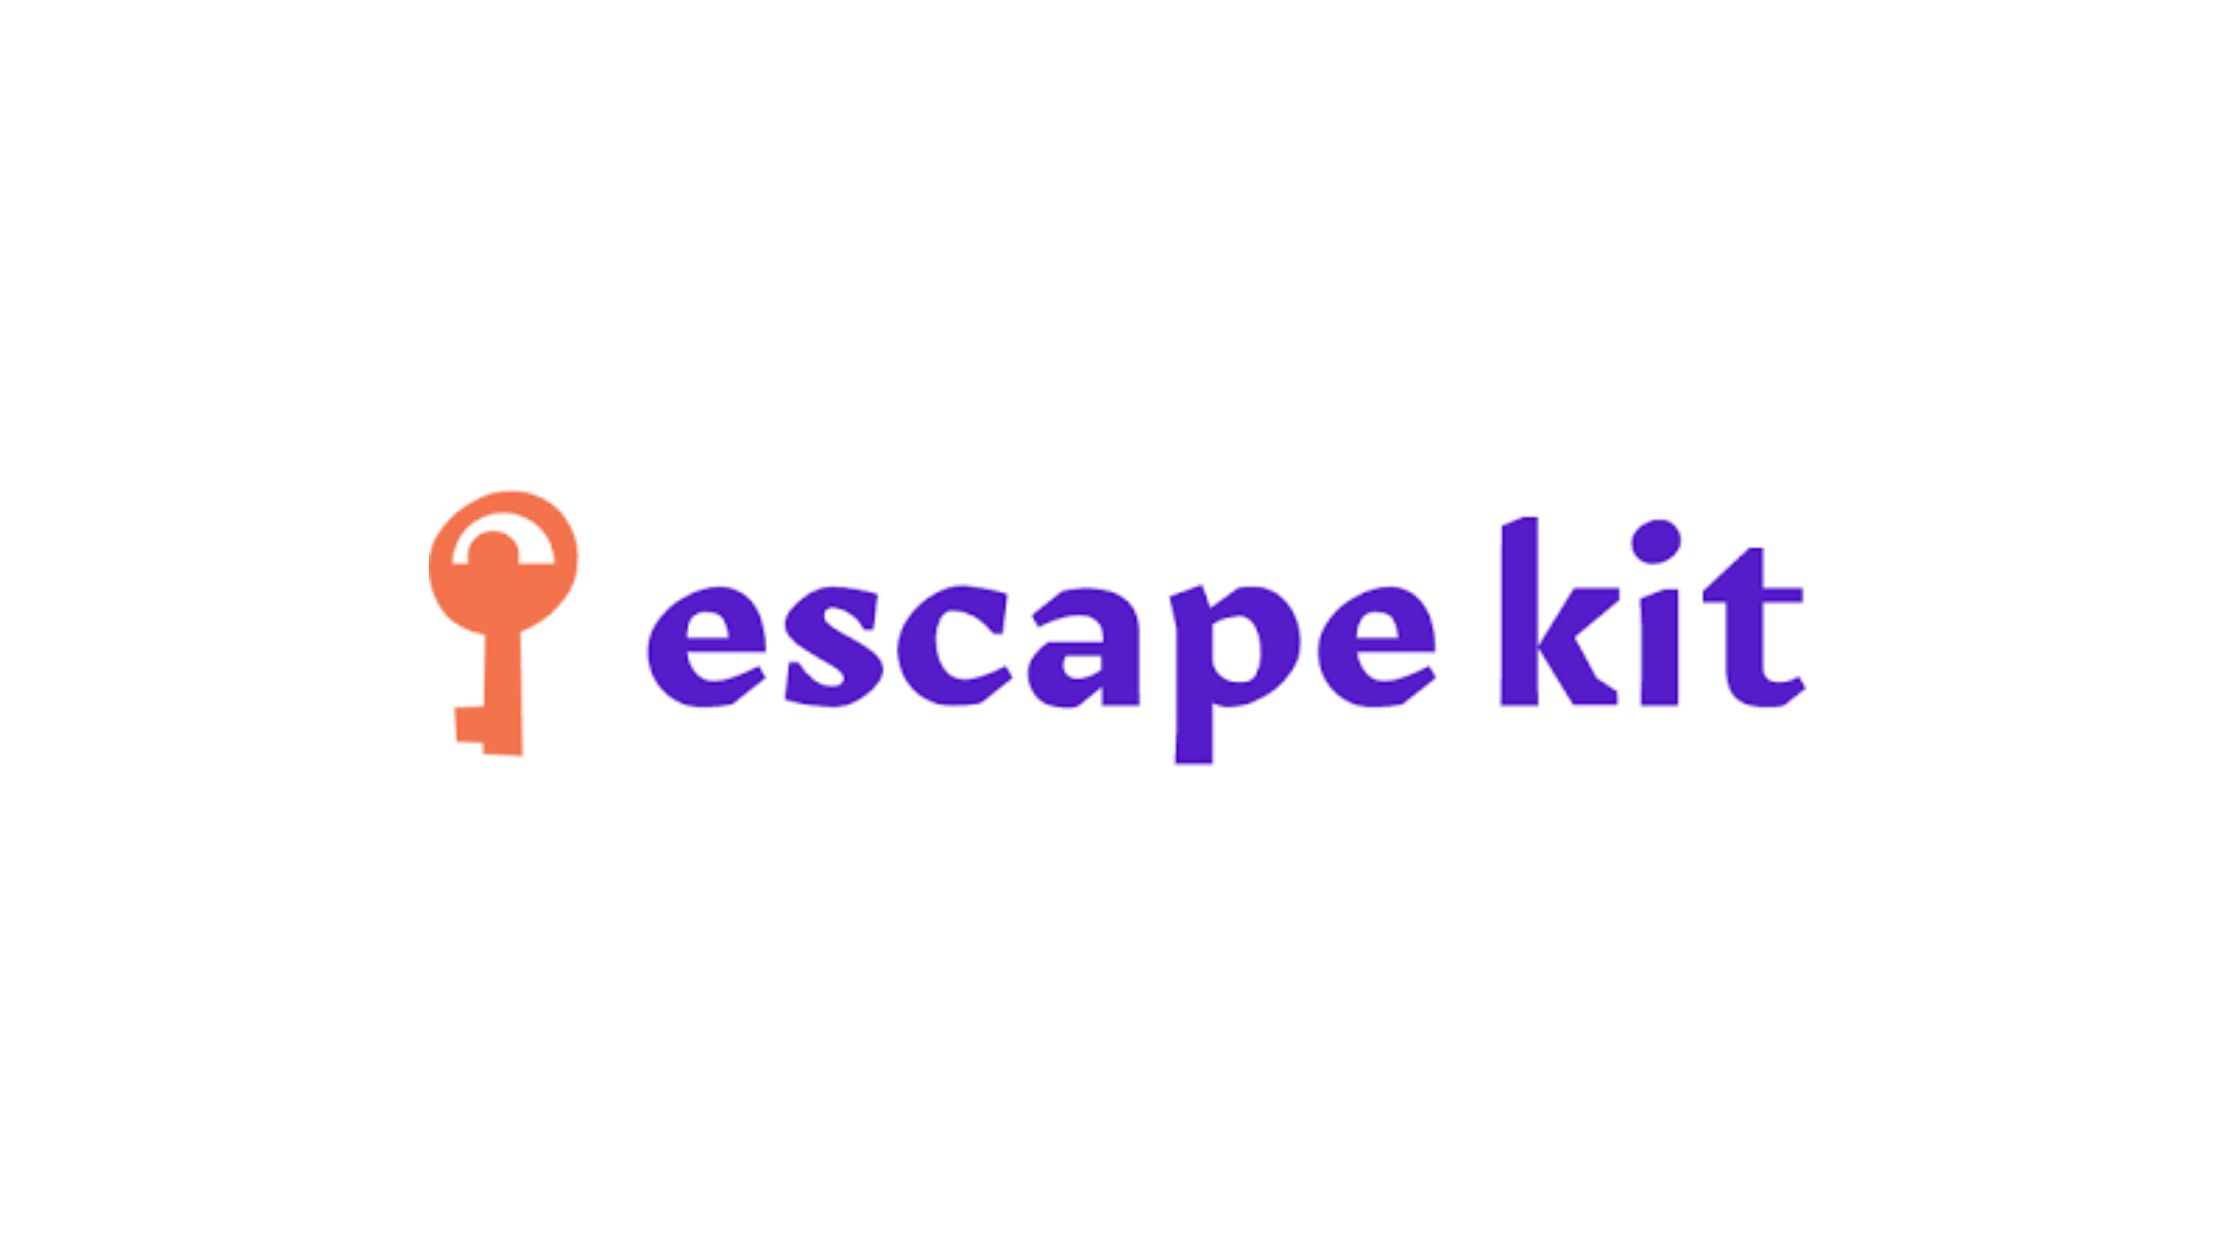 Escape kit Notre avis honnête sur cette box après l’avoir testée